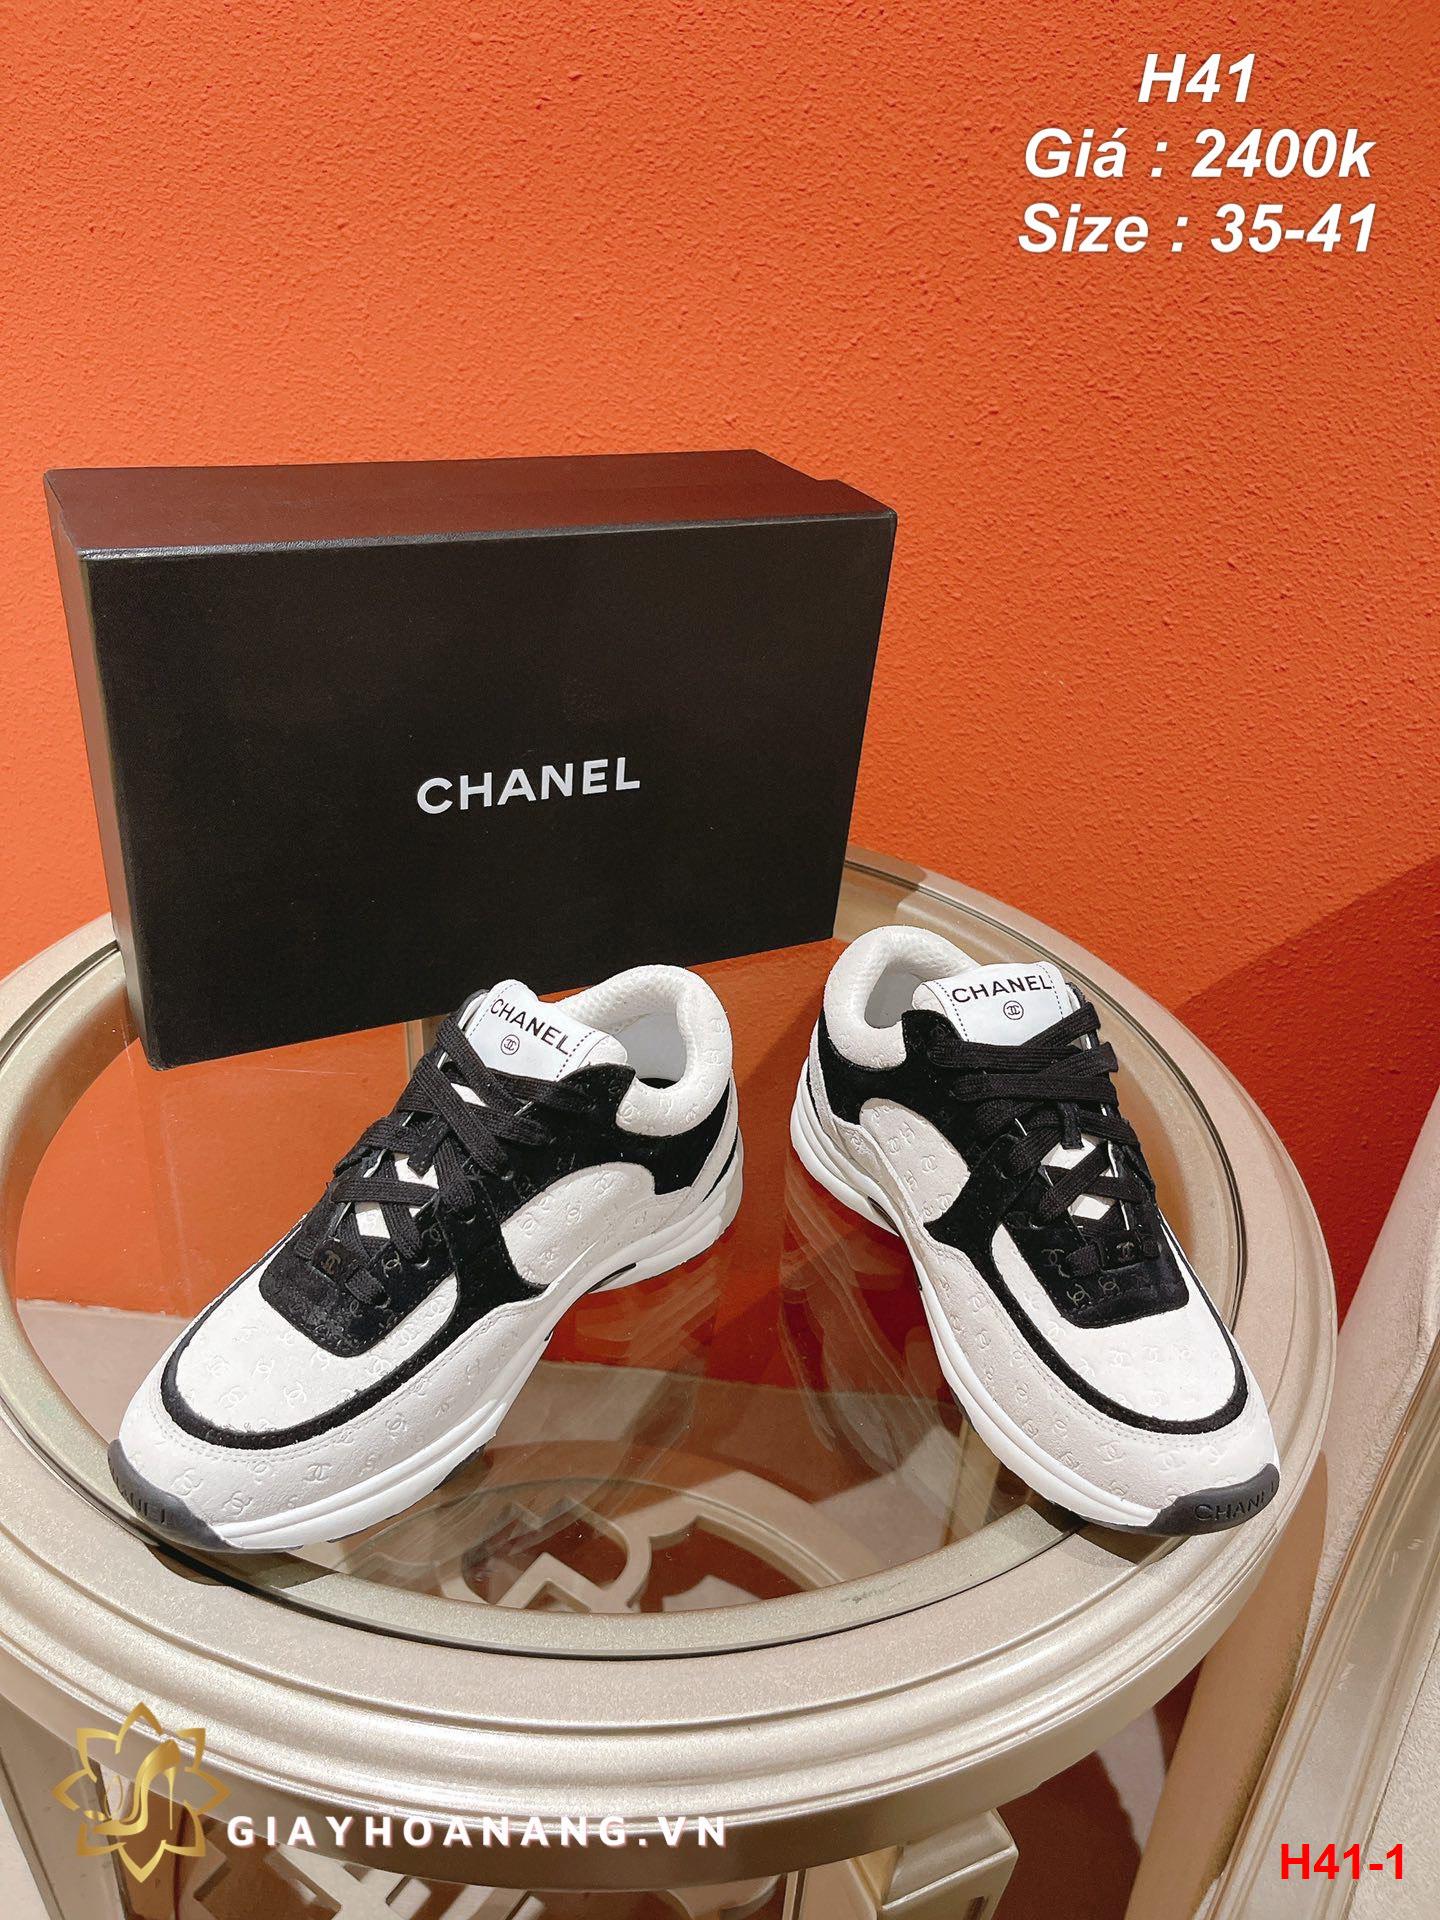 H41-1 Chanel giày thể thao siêu cấp